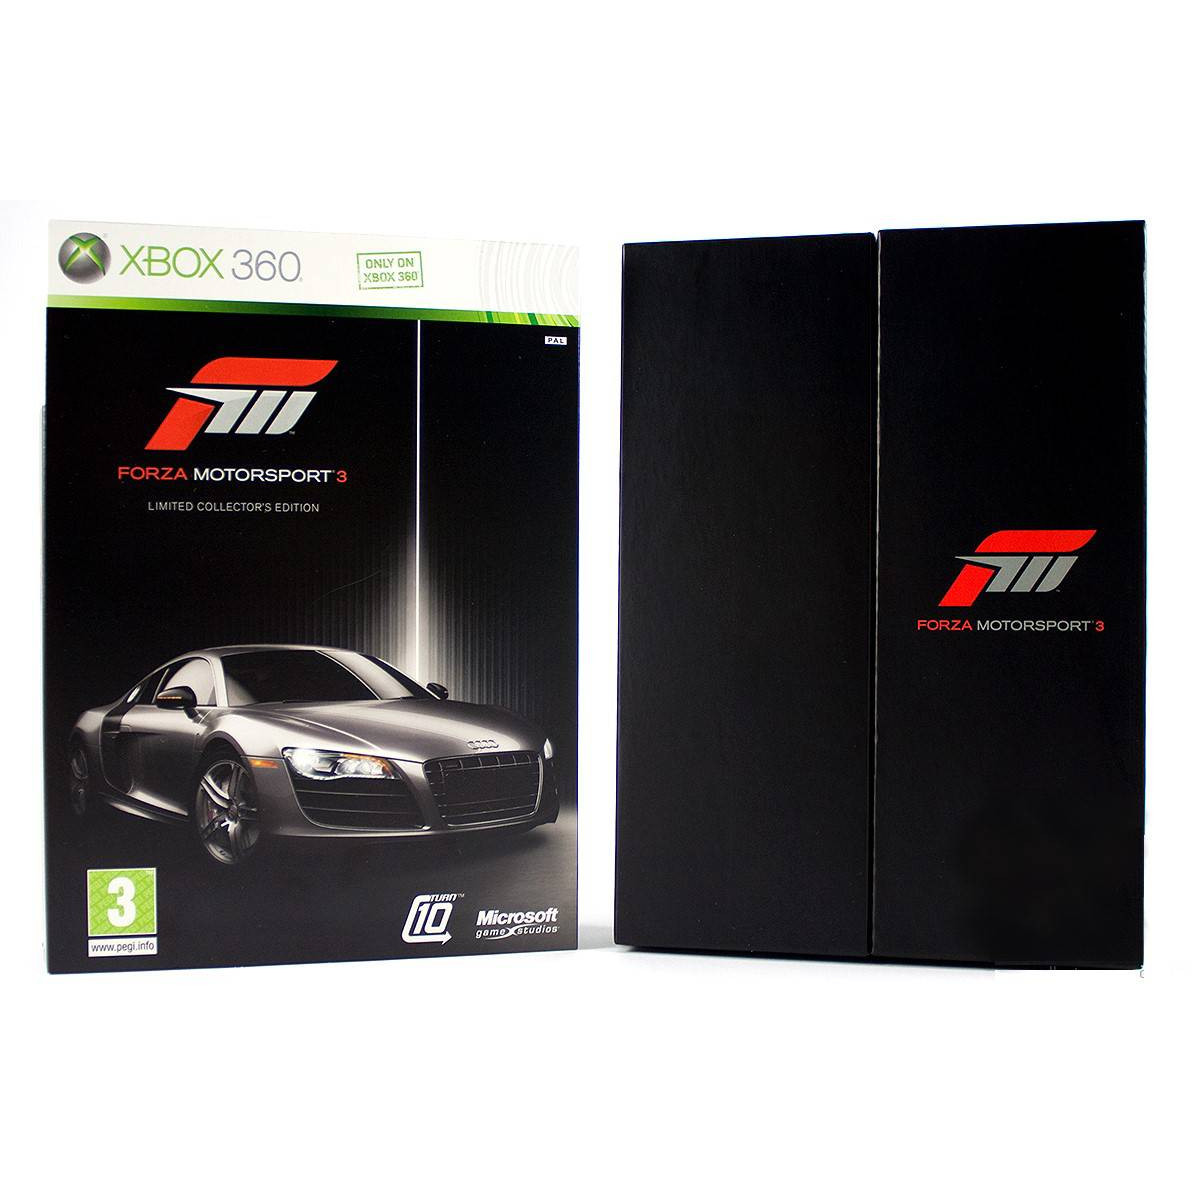 Forza Motorsport 3 Limited Collectors Edition (német doboz - pendrive, kulcstartó nélkül)